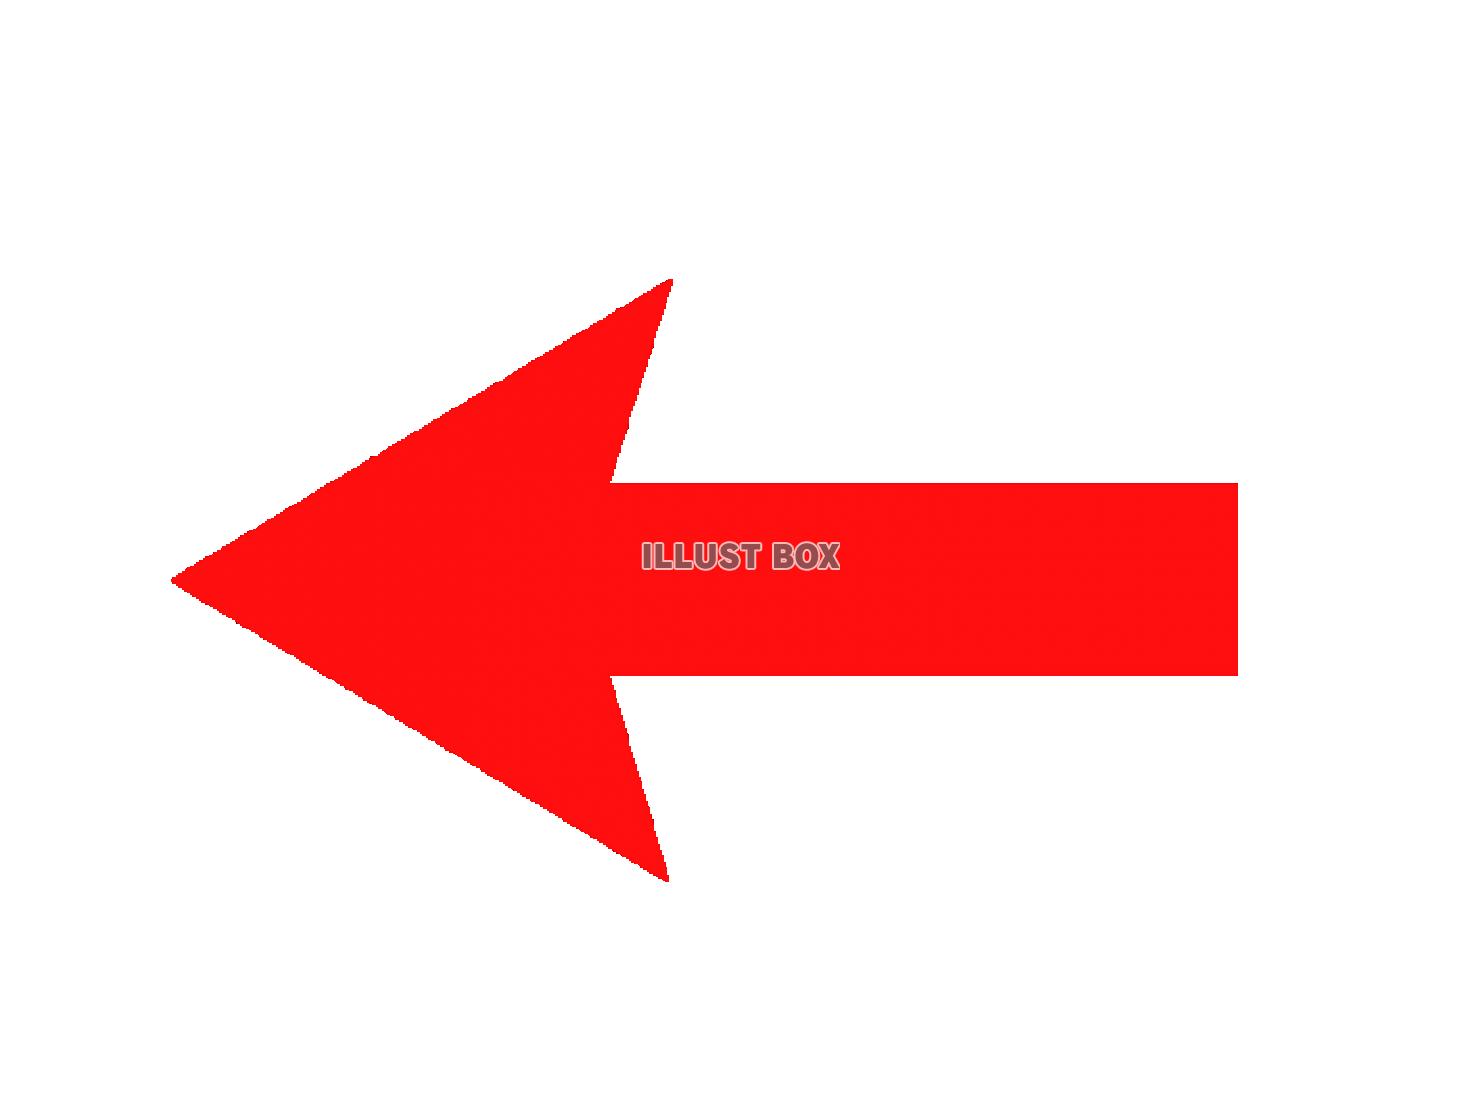 シンプルな赤い矢印